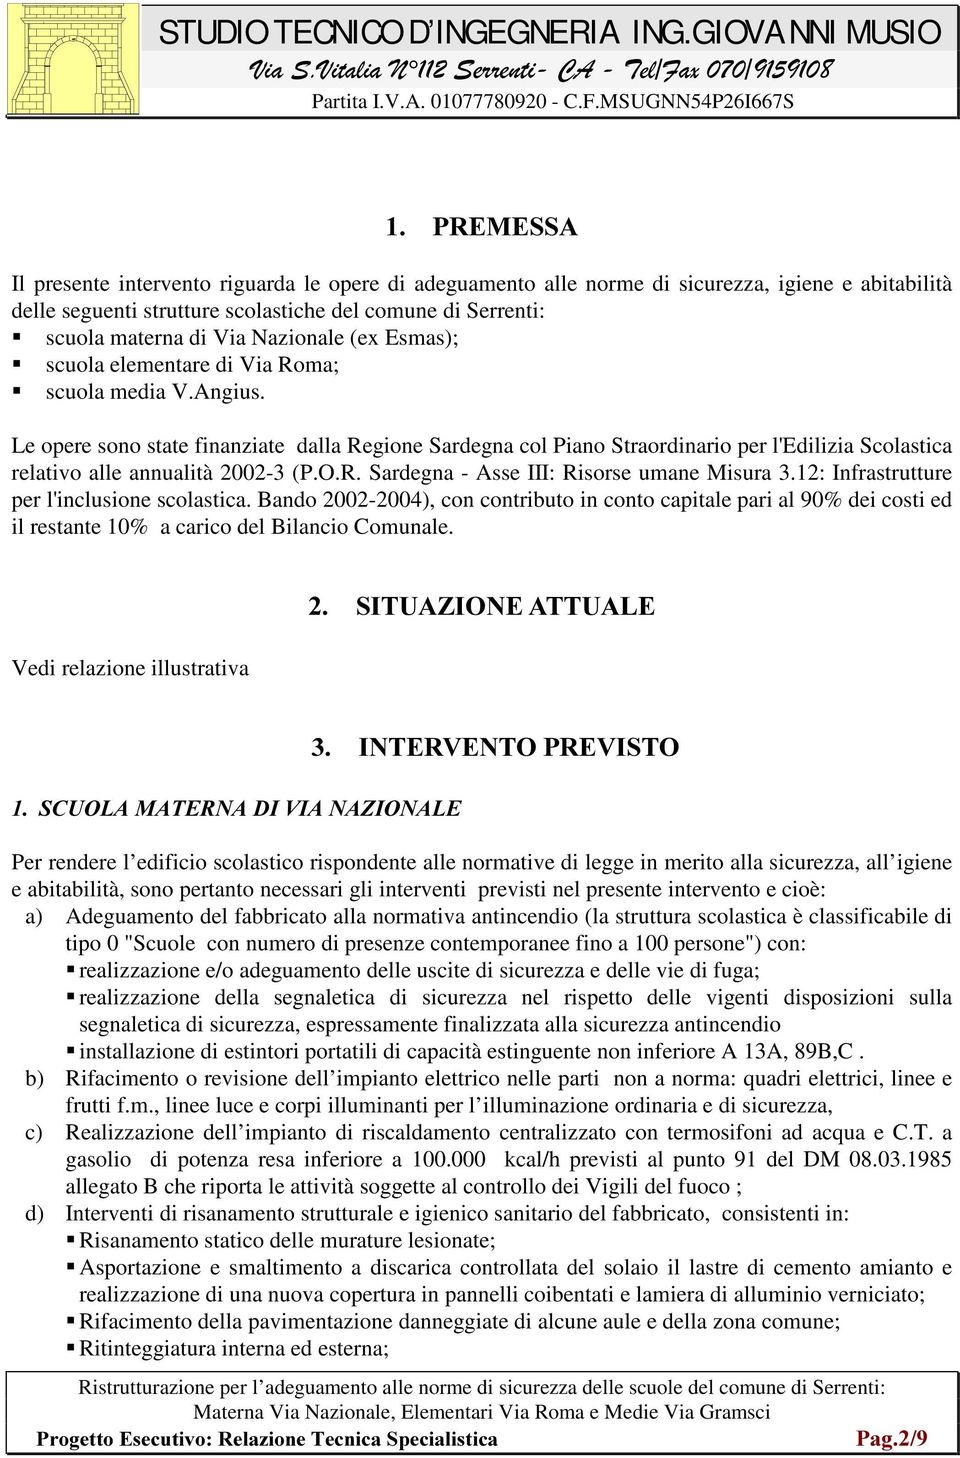 Le opere sono state finanziate dalla Regione Sardegna col Piano Straordinario per l'edilizia Scolastica relativo alle annualità 2002-3 (P.O.R. Sardegna - Asse III: Risorse umane Misura 3.